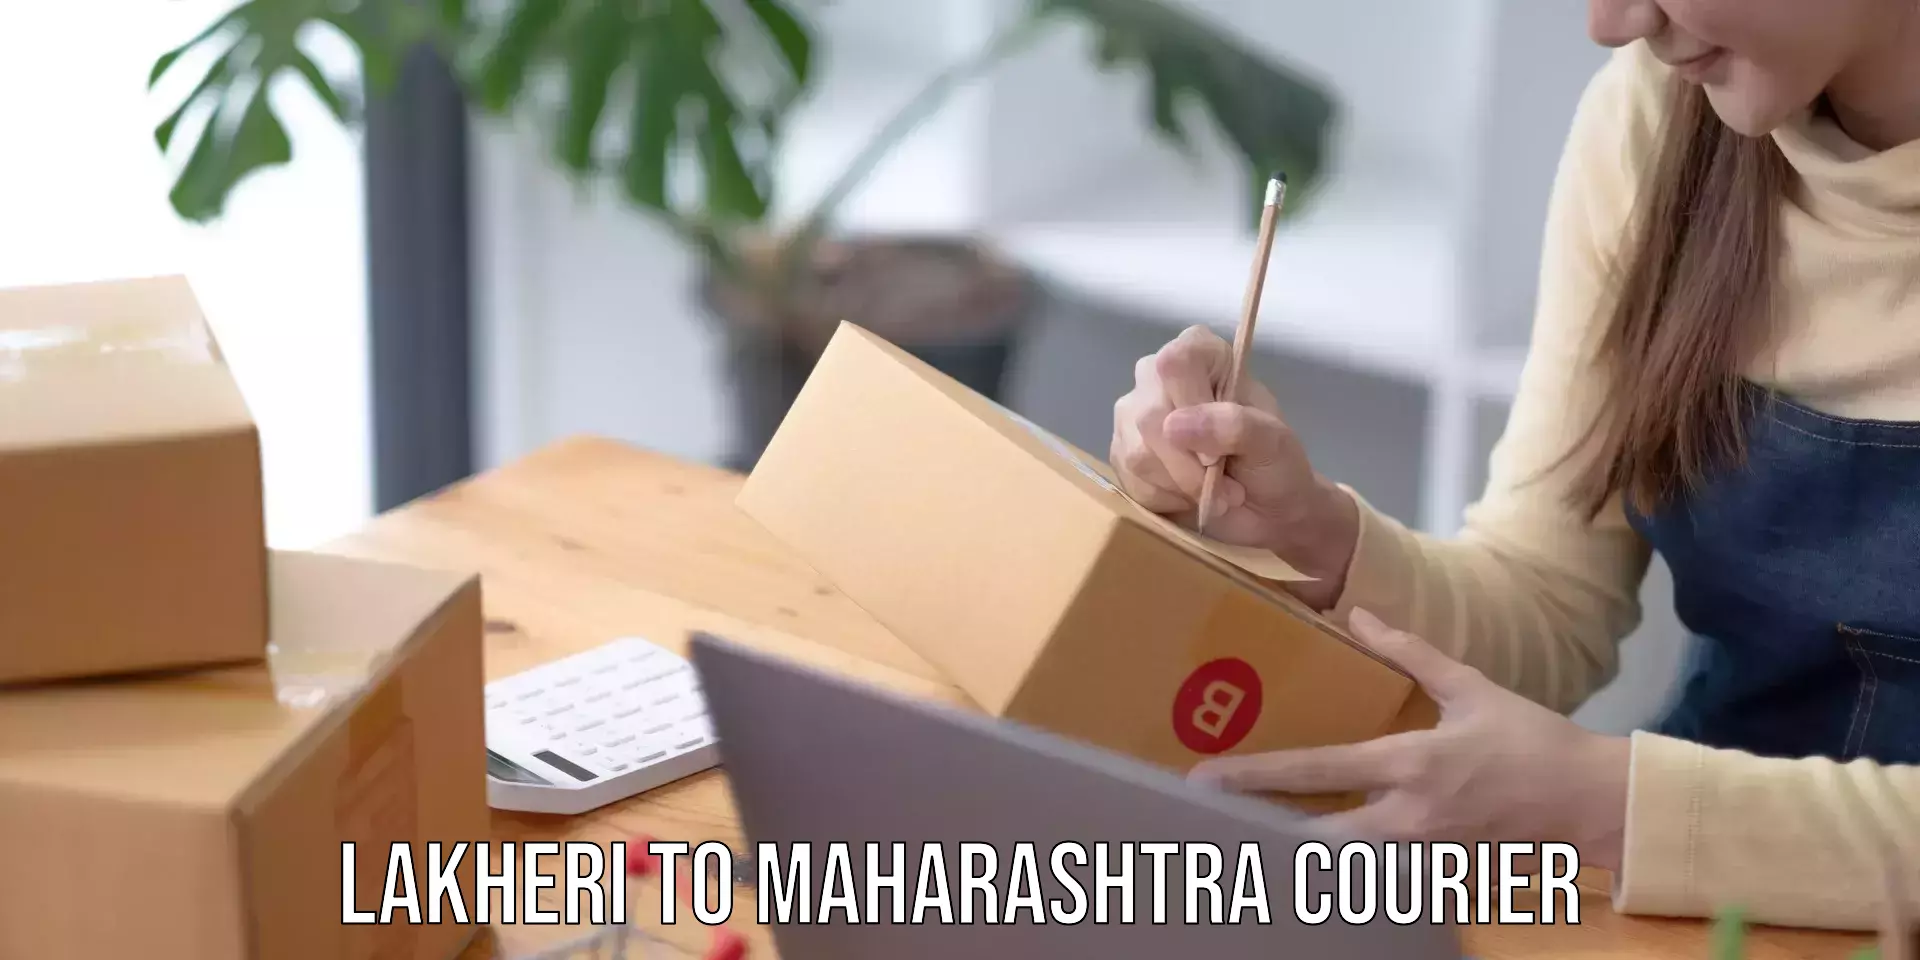 Affordable parcel service Lakheri to Maharashtra